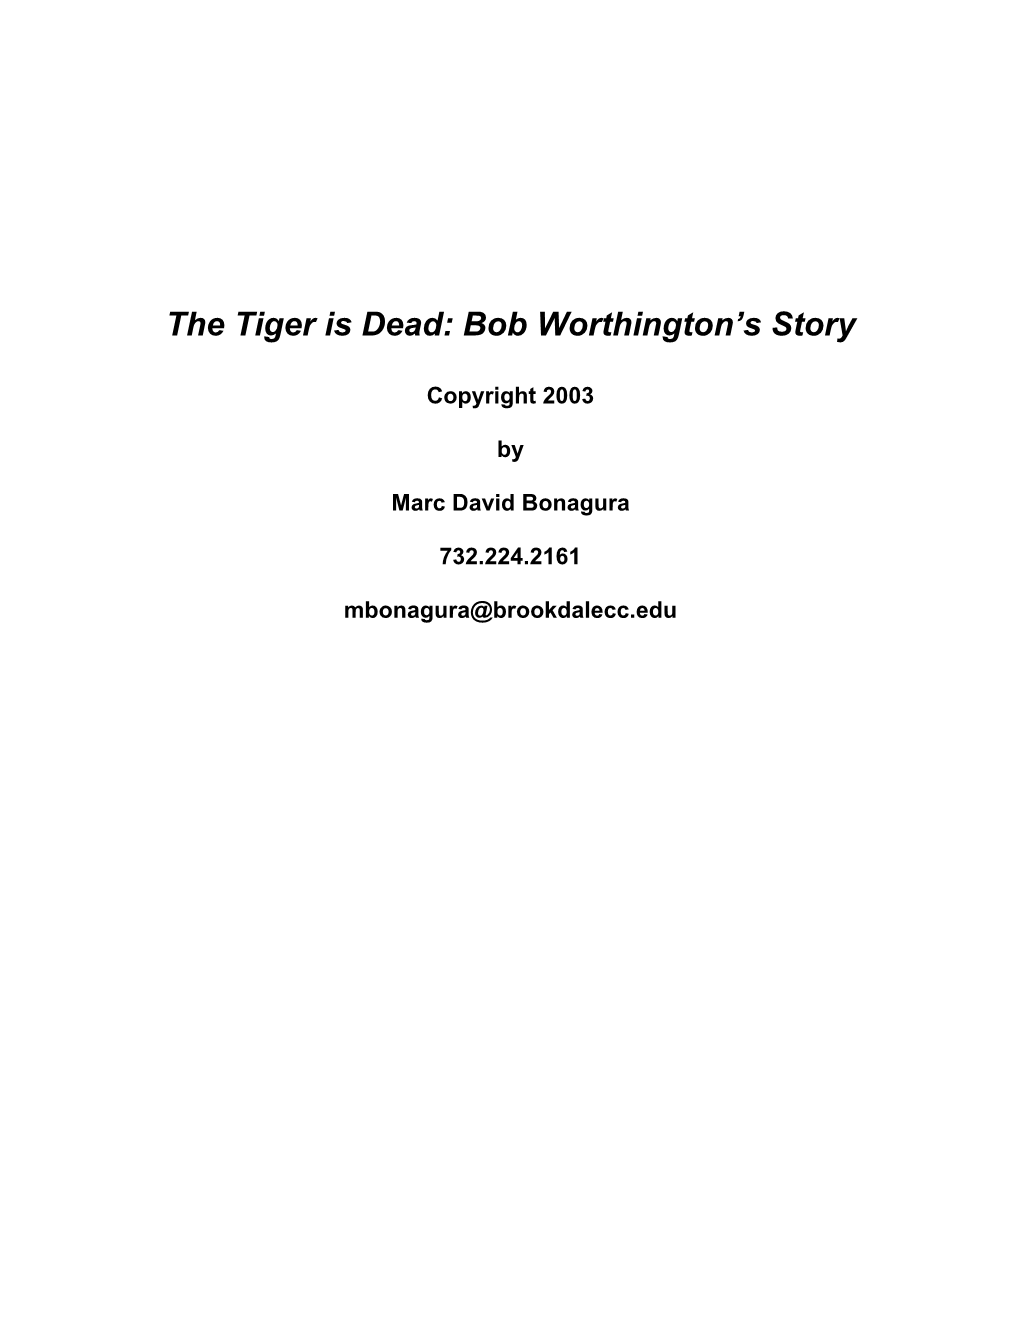 Bob Worthington's Story